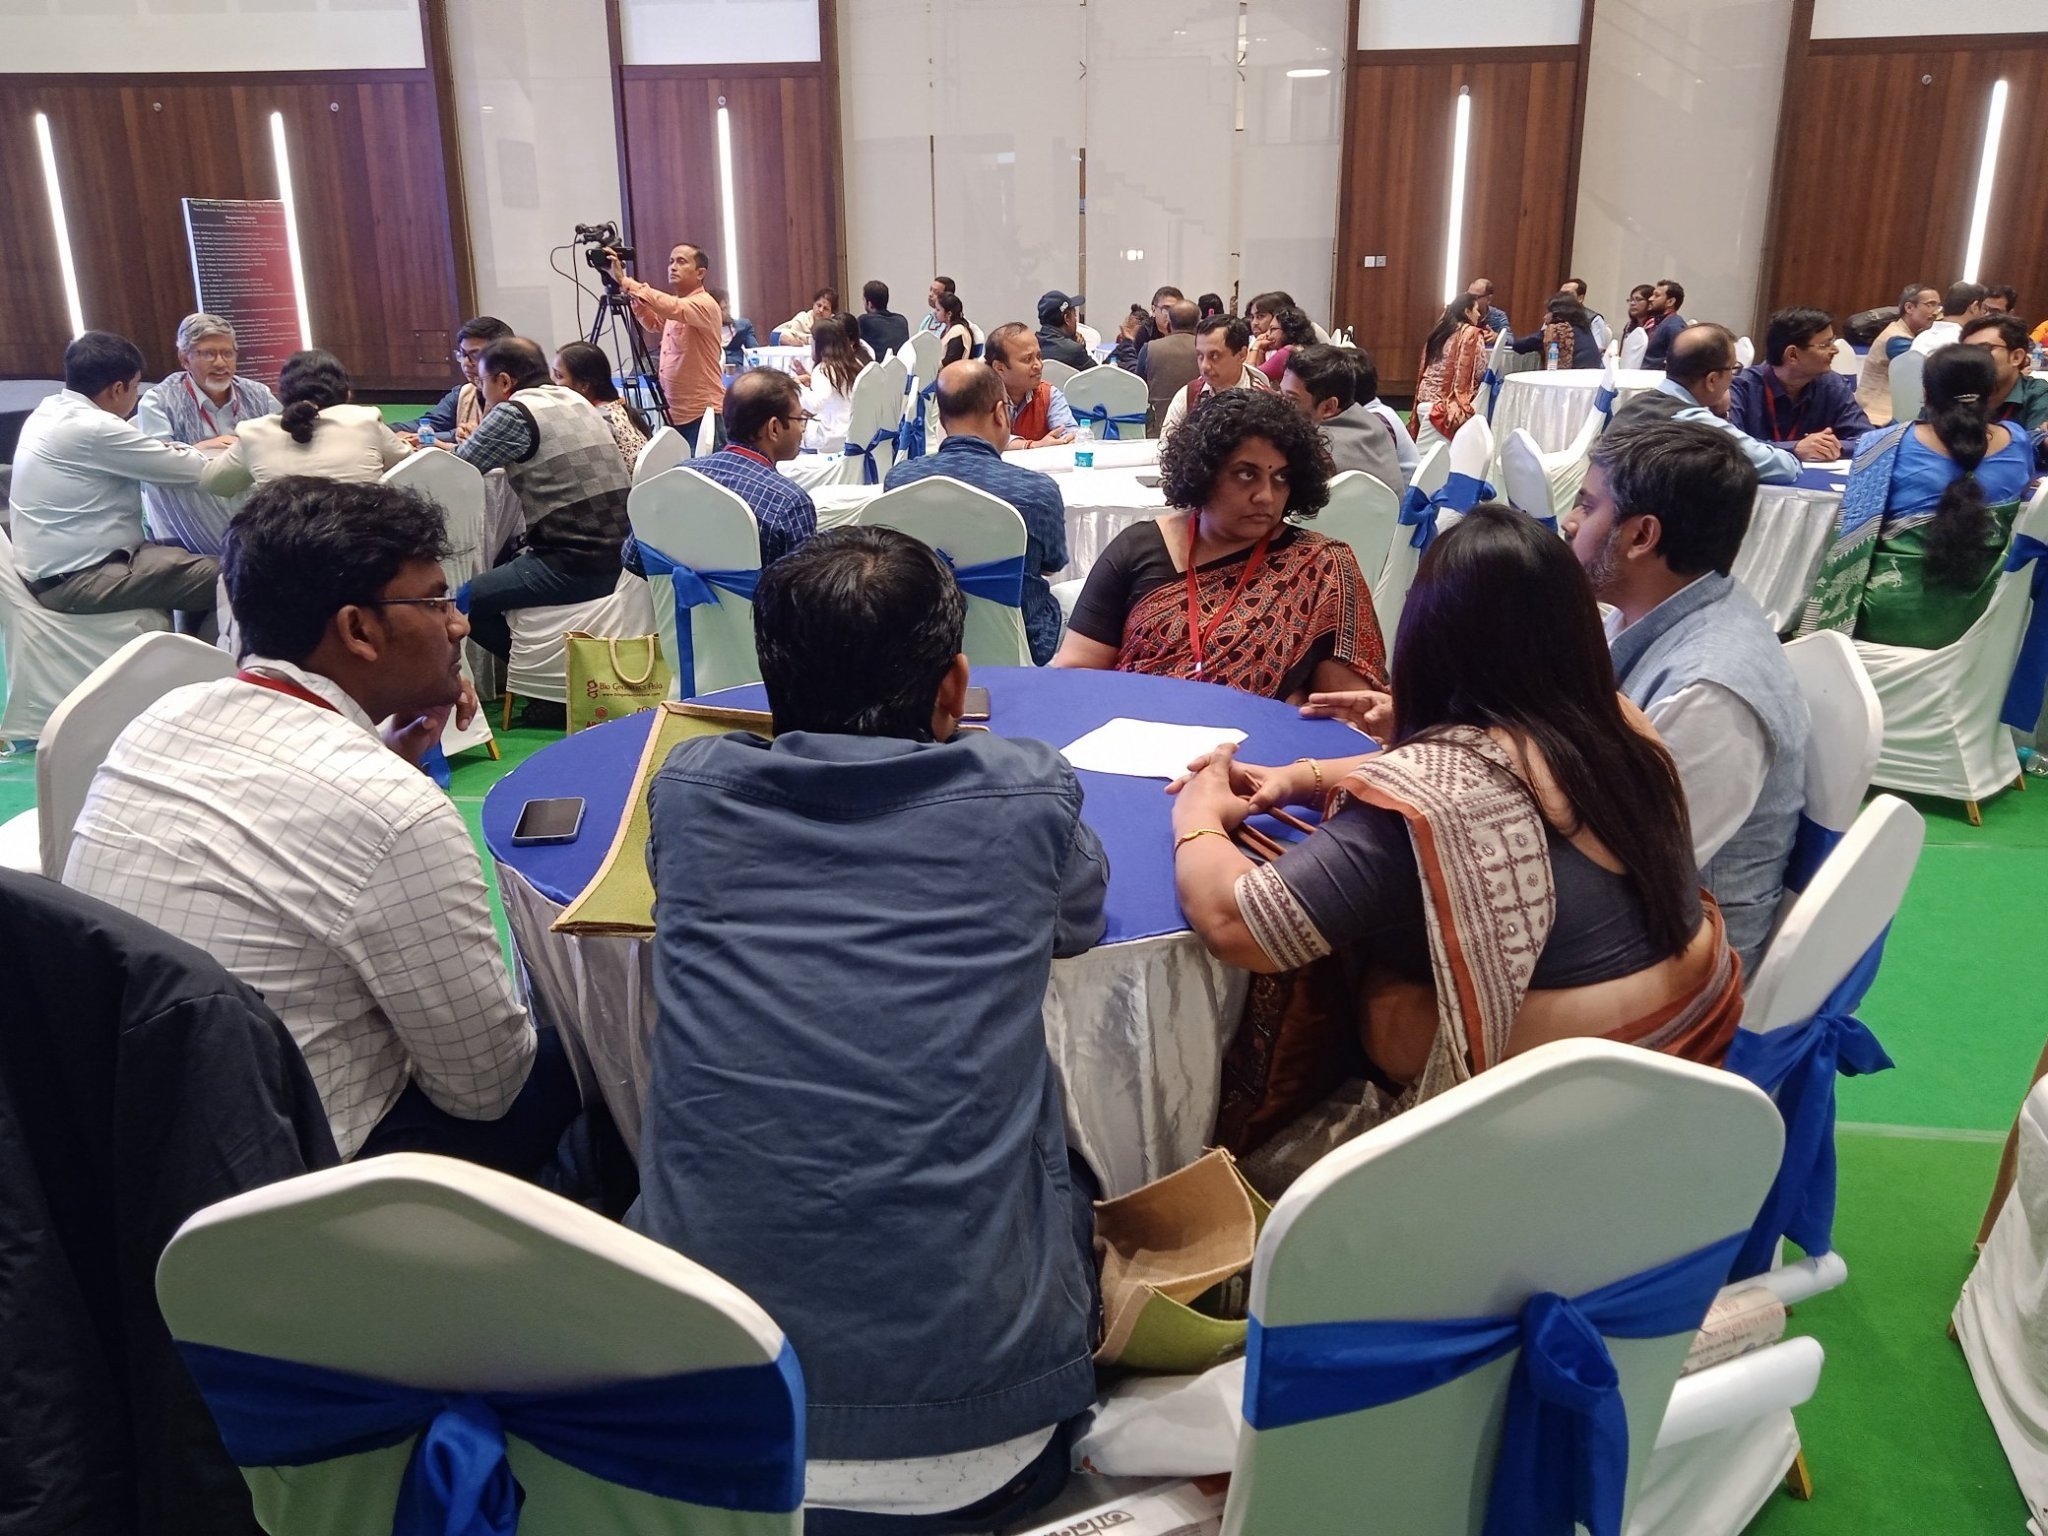 Round table discussion among participants at RYIM Kolkata. Credits: Ankita Rathore.